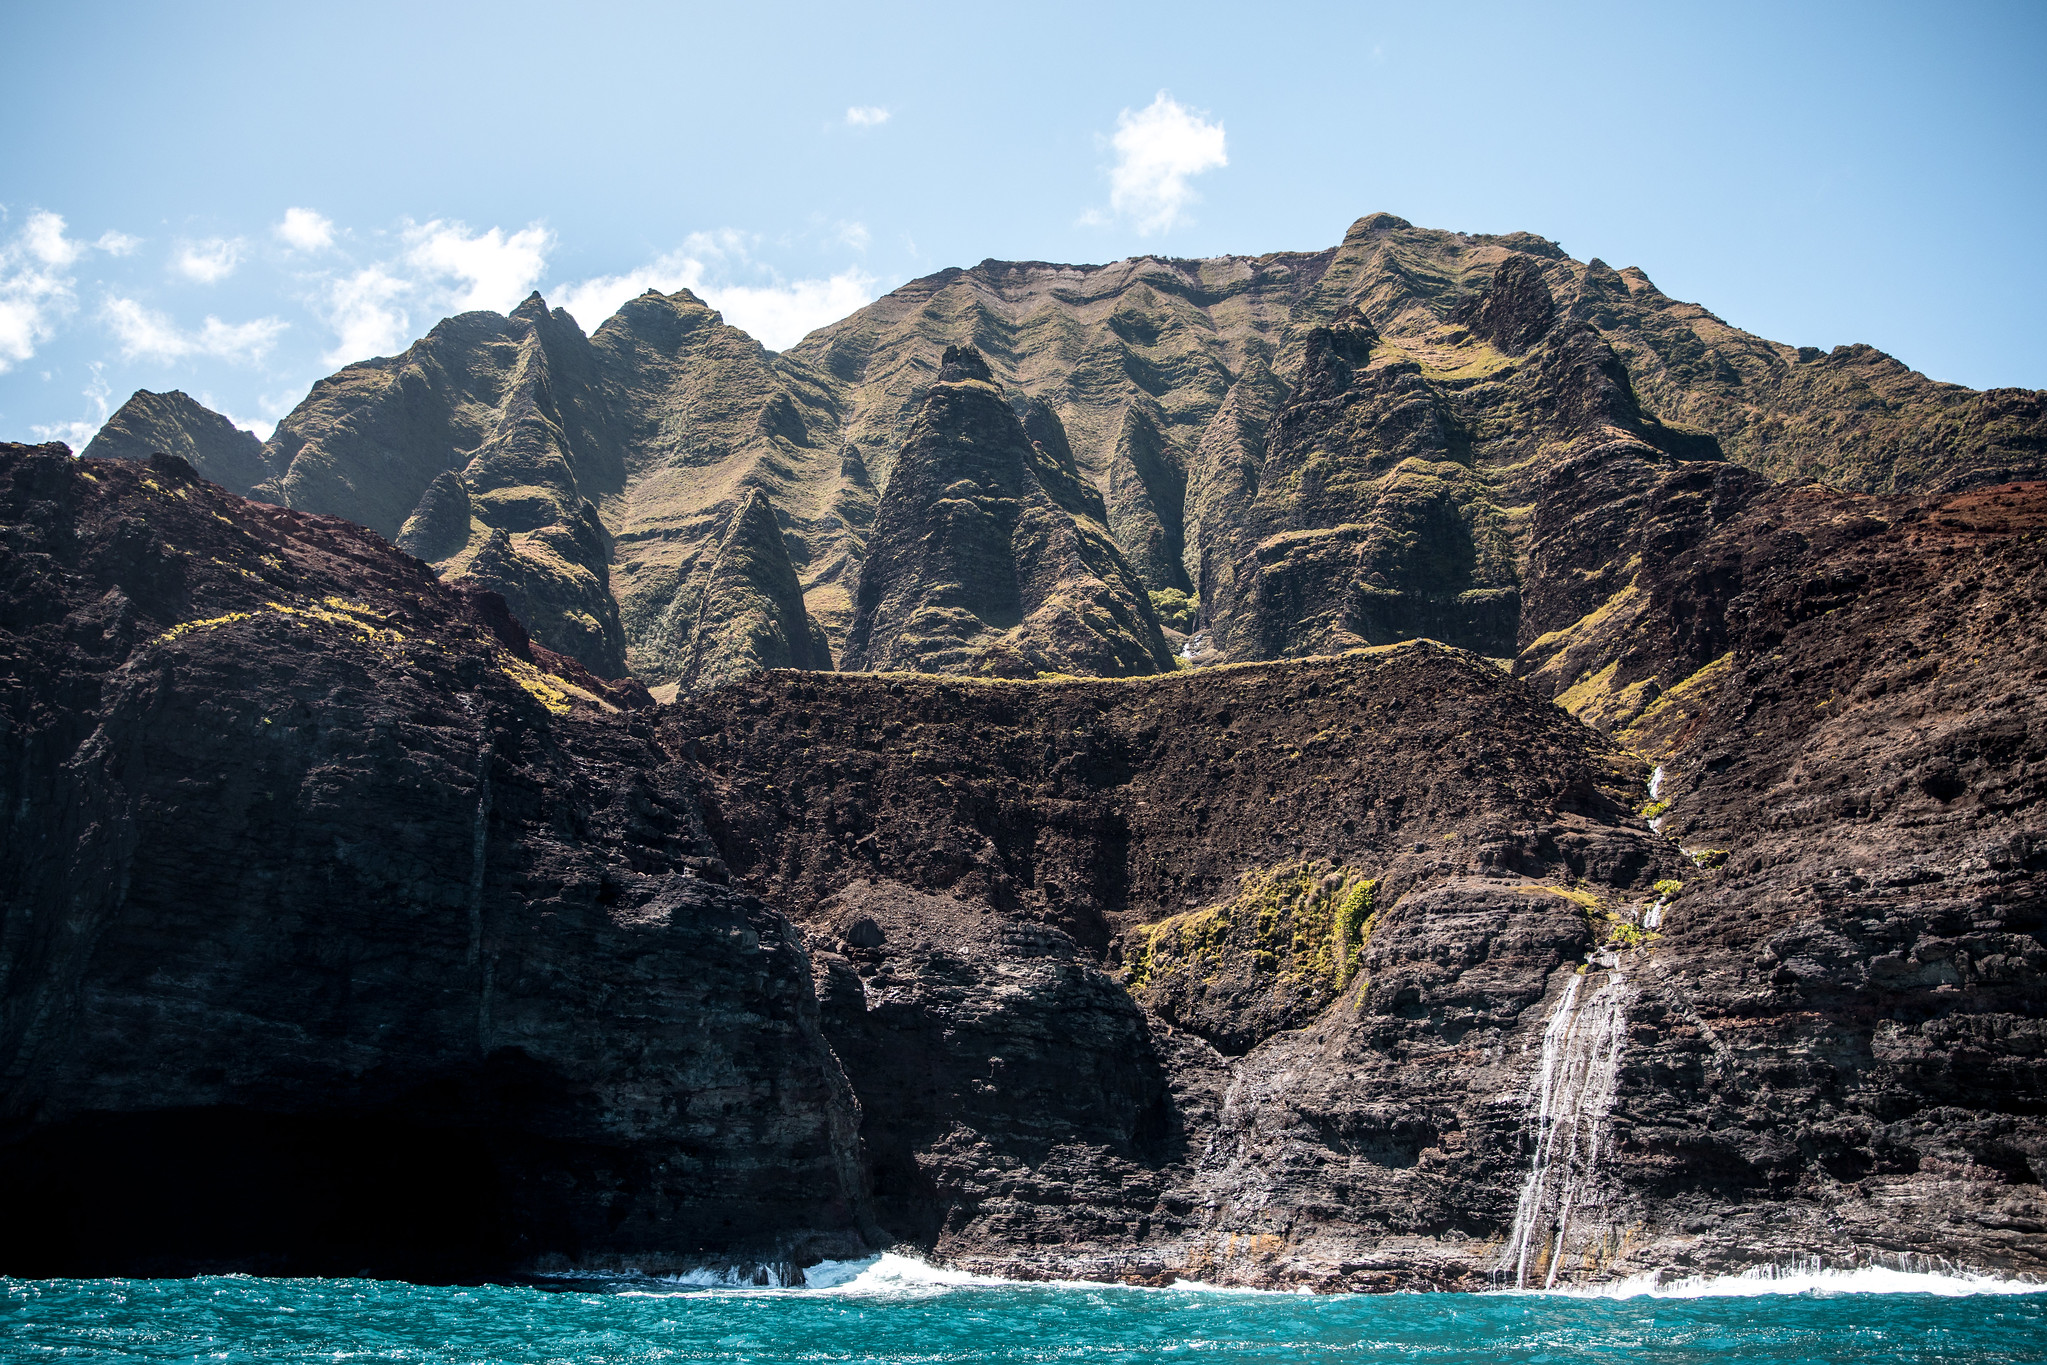 Na Pali Coast Sea Cave and Snorkel with Na Pali Pirates - Kauai Things to do, Kauai Travel, Kauai Activities, Kauai Must do, Kauai Travel Tips, Na Pali Coast Tour, Na Pali Coast | Wanderlustyle.com